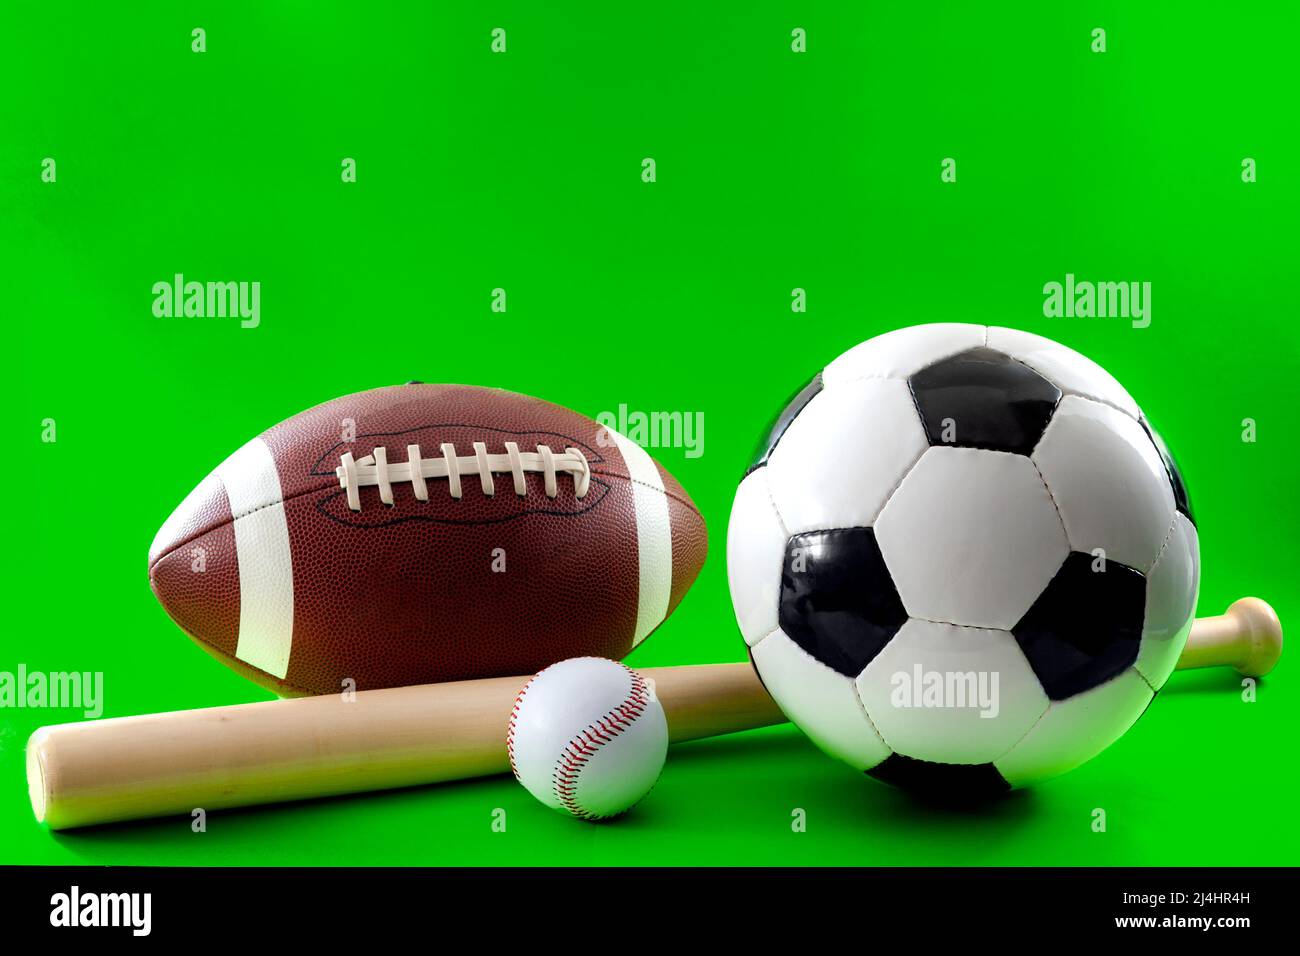 Equipo deportivo y concepto de actividades de ocio con un bate de béisbol y múltiples pelotas utilizadas en diferentes deportes, como el fútbol americano, el béisbol y así Foto de stock